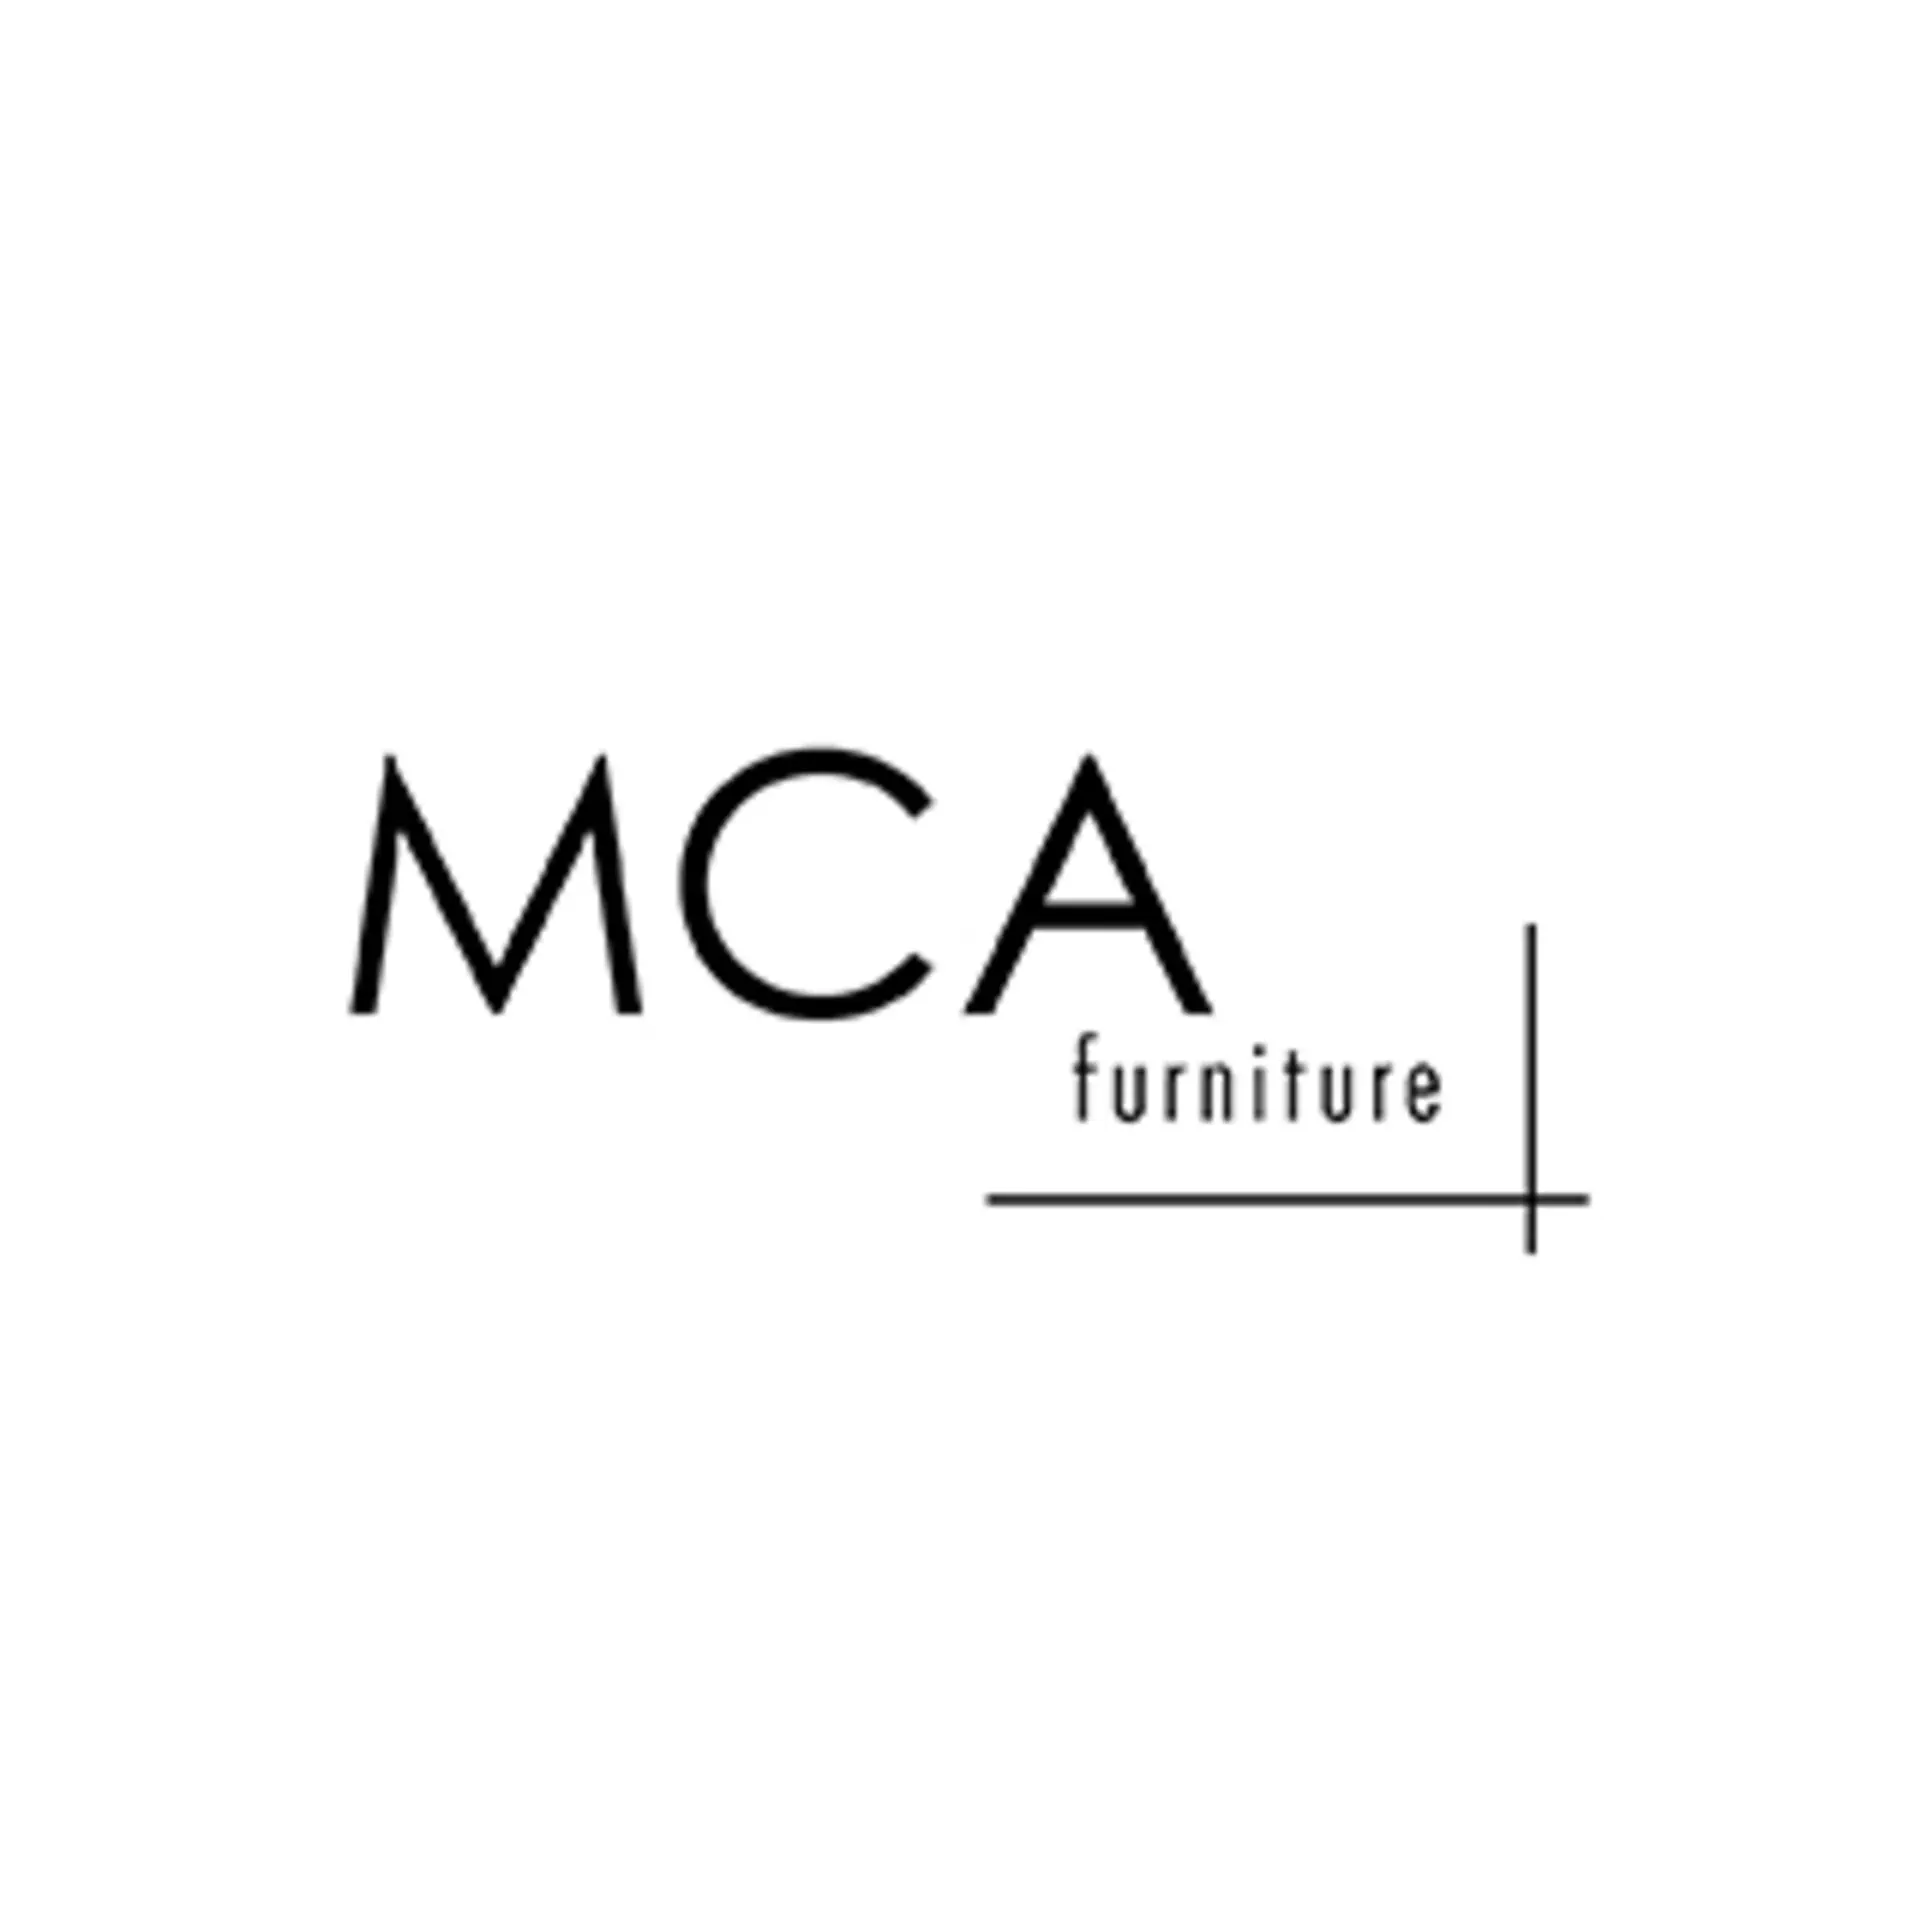 MCA furniture